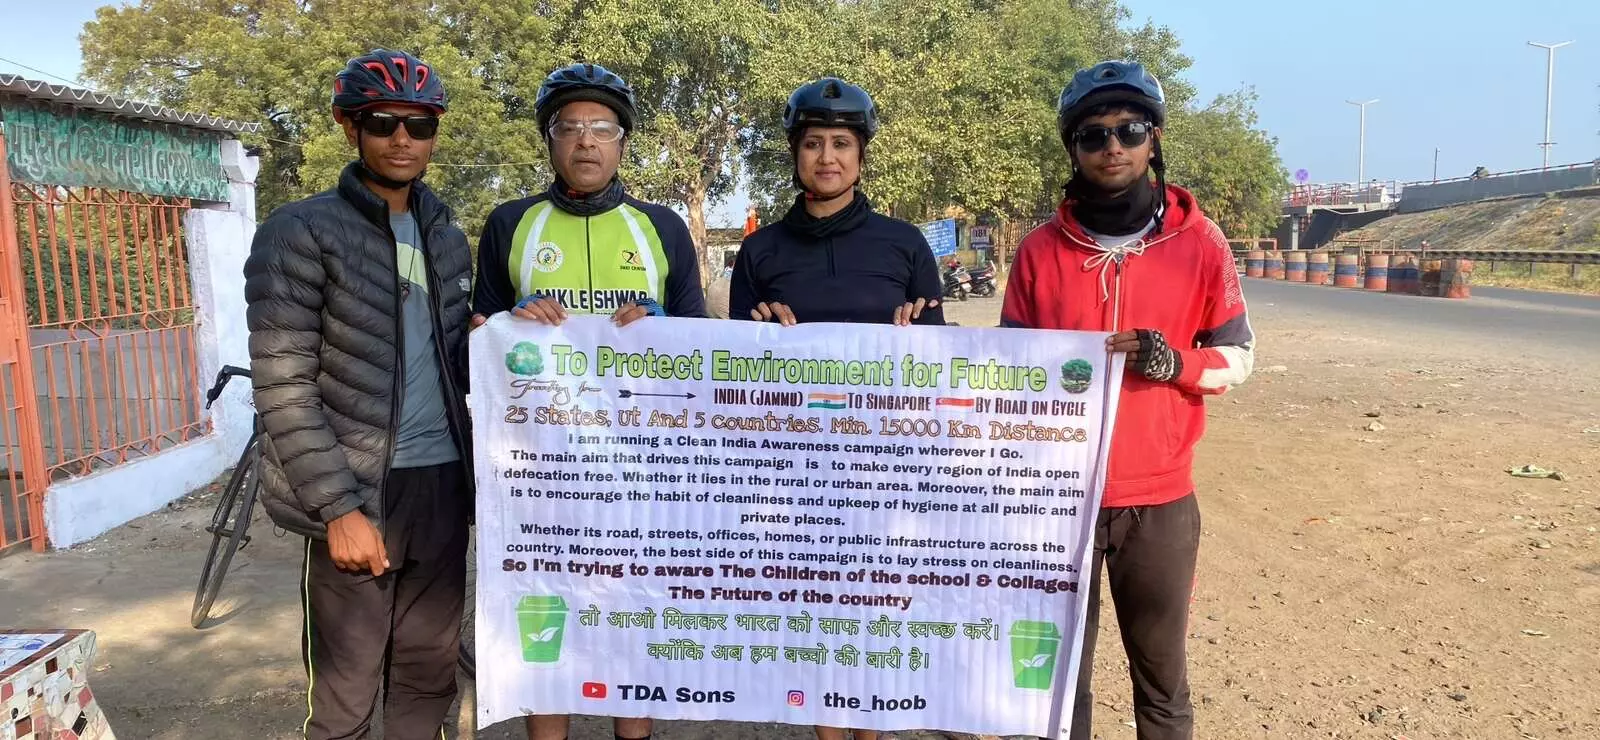 અંકલેશ્વર: પર્યાવરણ સંરક્ષણ બાબતે જાગૃતિ અર્થે સિંગાપોર જવા નિકળેલ સાયકલયાત્રીઓનું કરાયું સ્વાગત